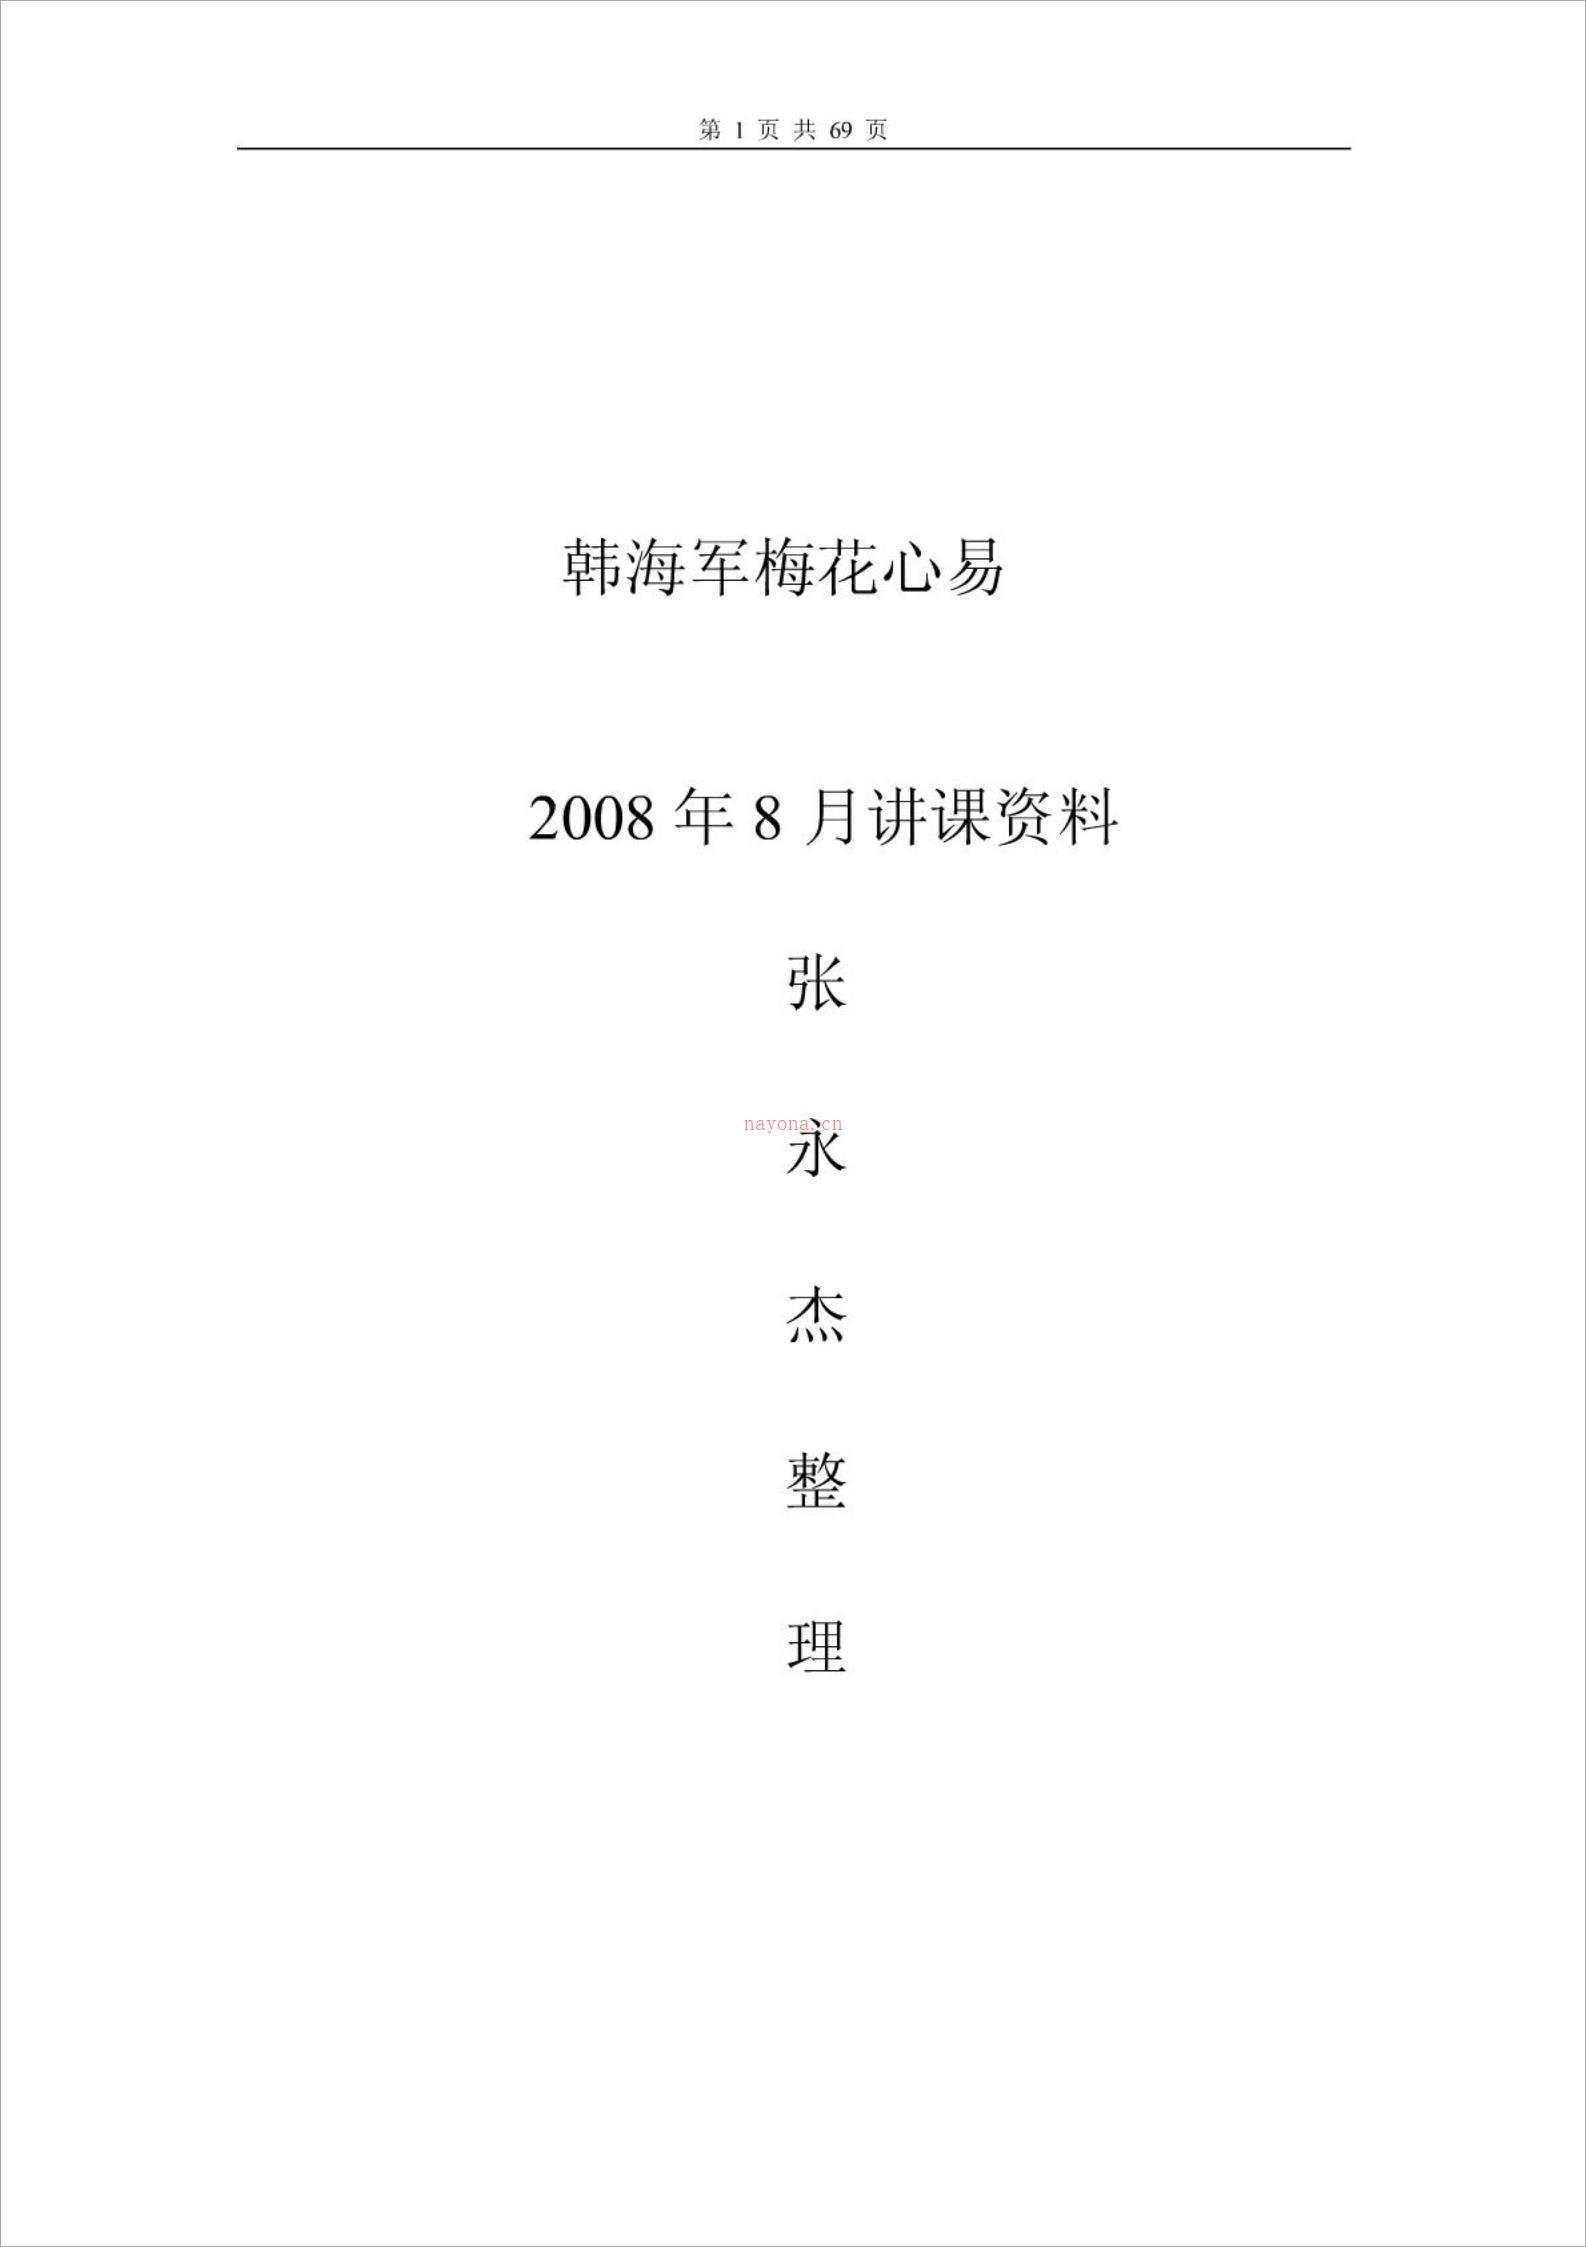 韩海军讲课资料.pdf 百度网盘资源